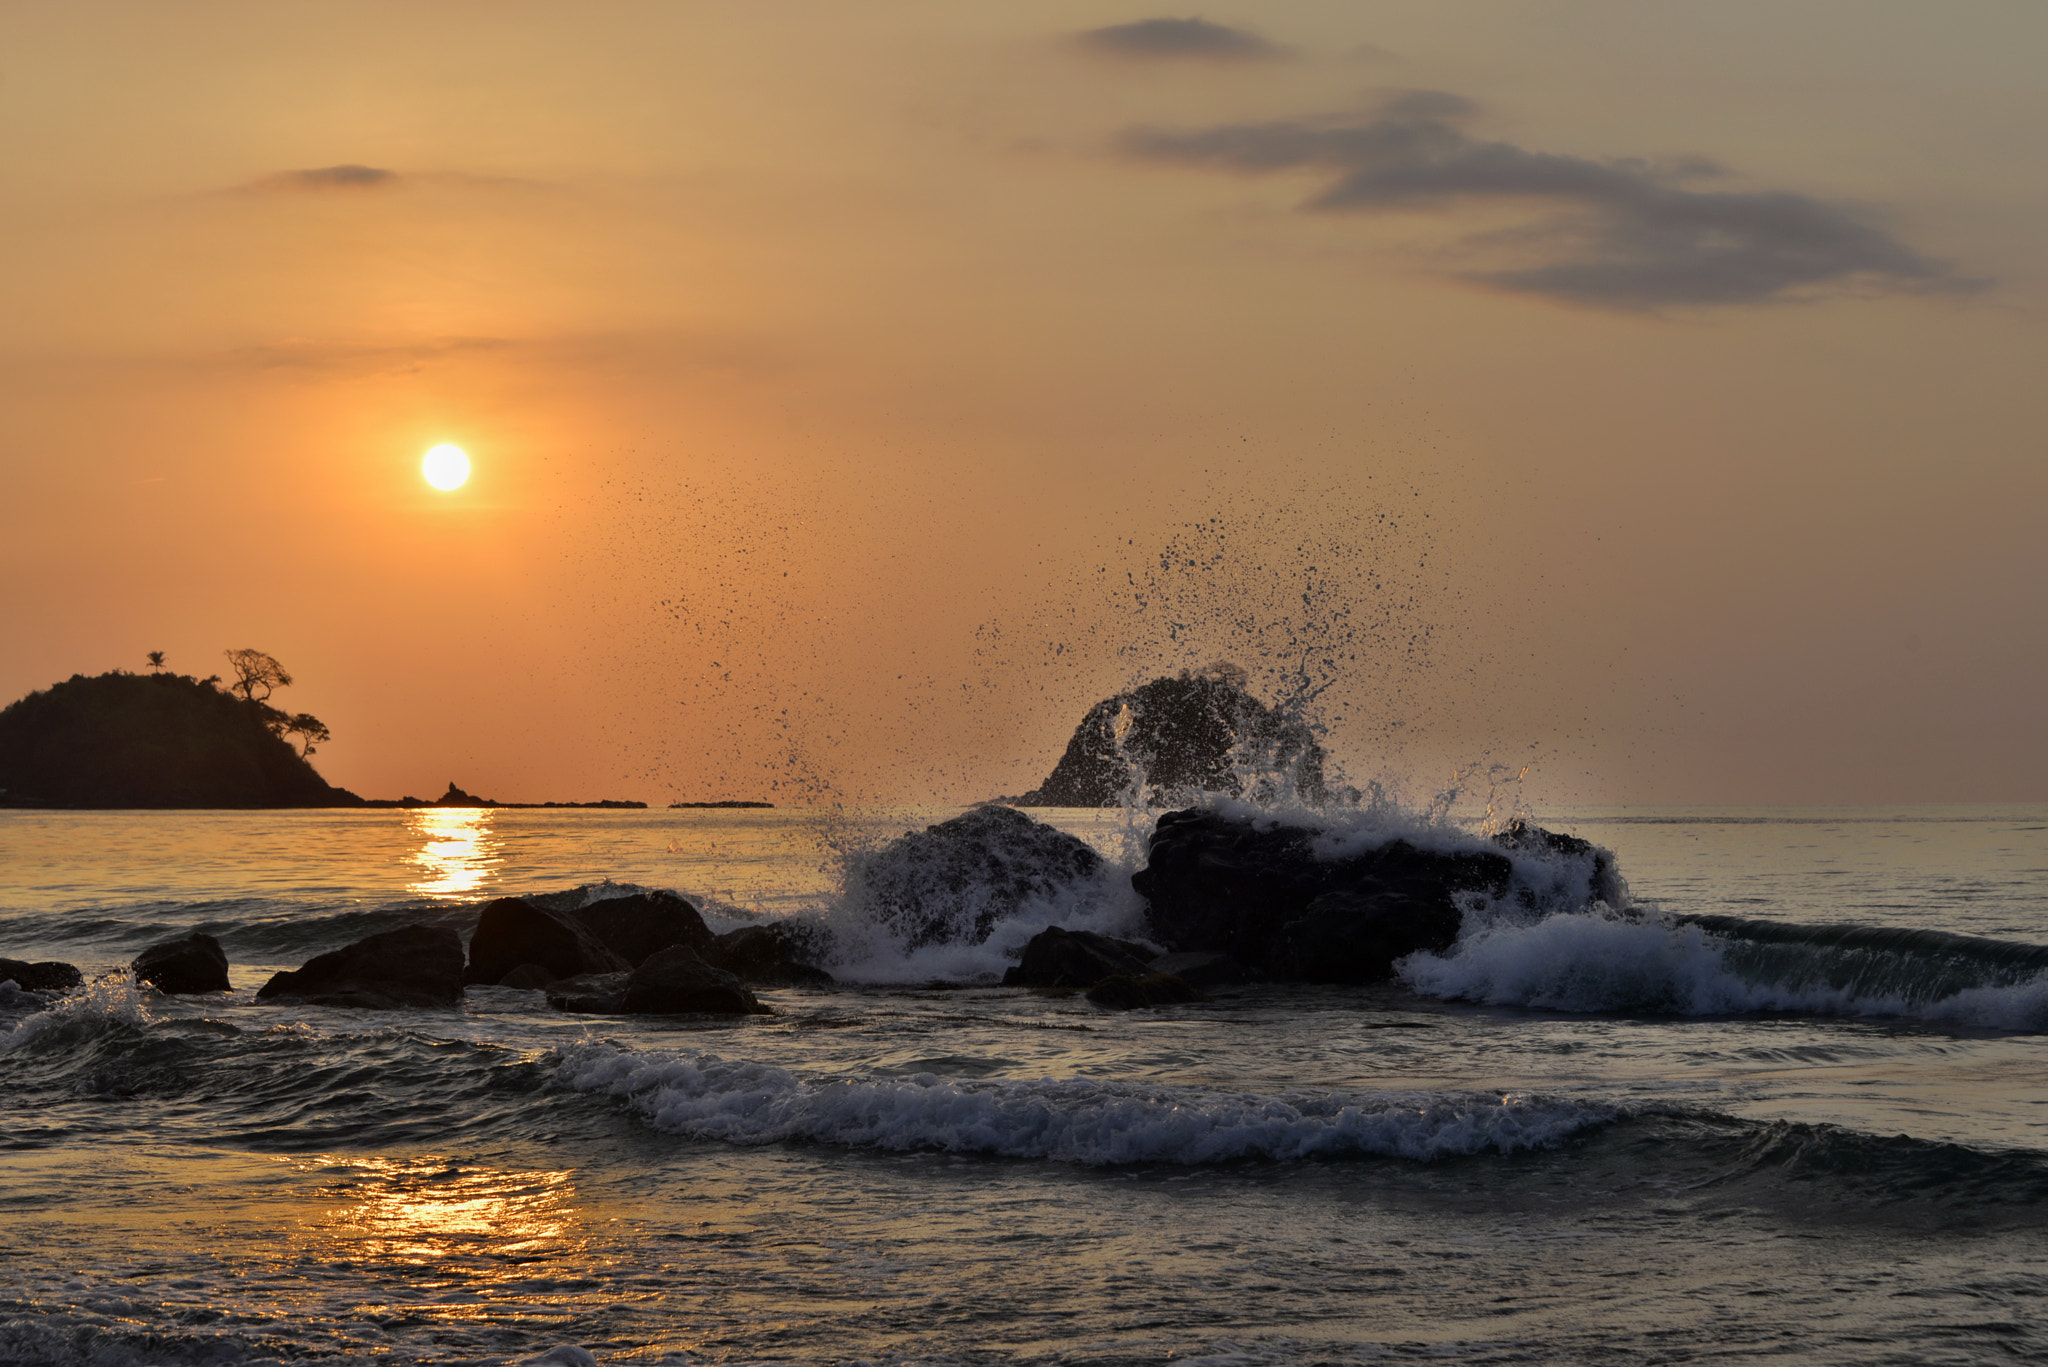 Nikon AF-S Nikkor 28-300mm F3.5-5.6G ED VR sample photo. Sunset at the sea photography